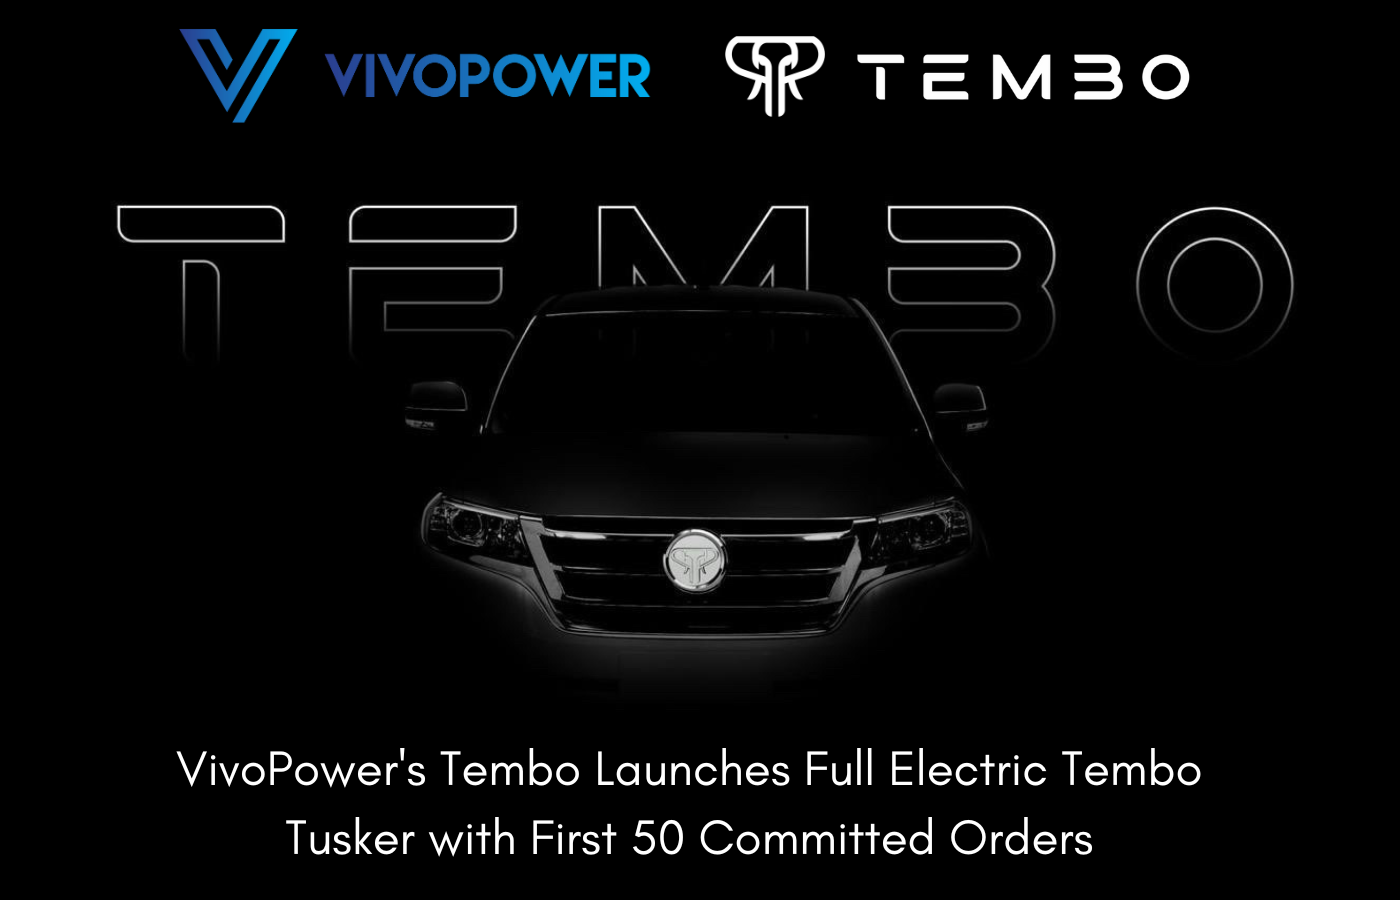 vivopower tembo tusker launch black 1